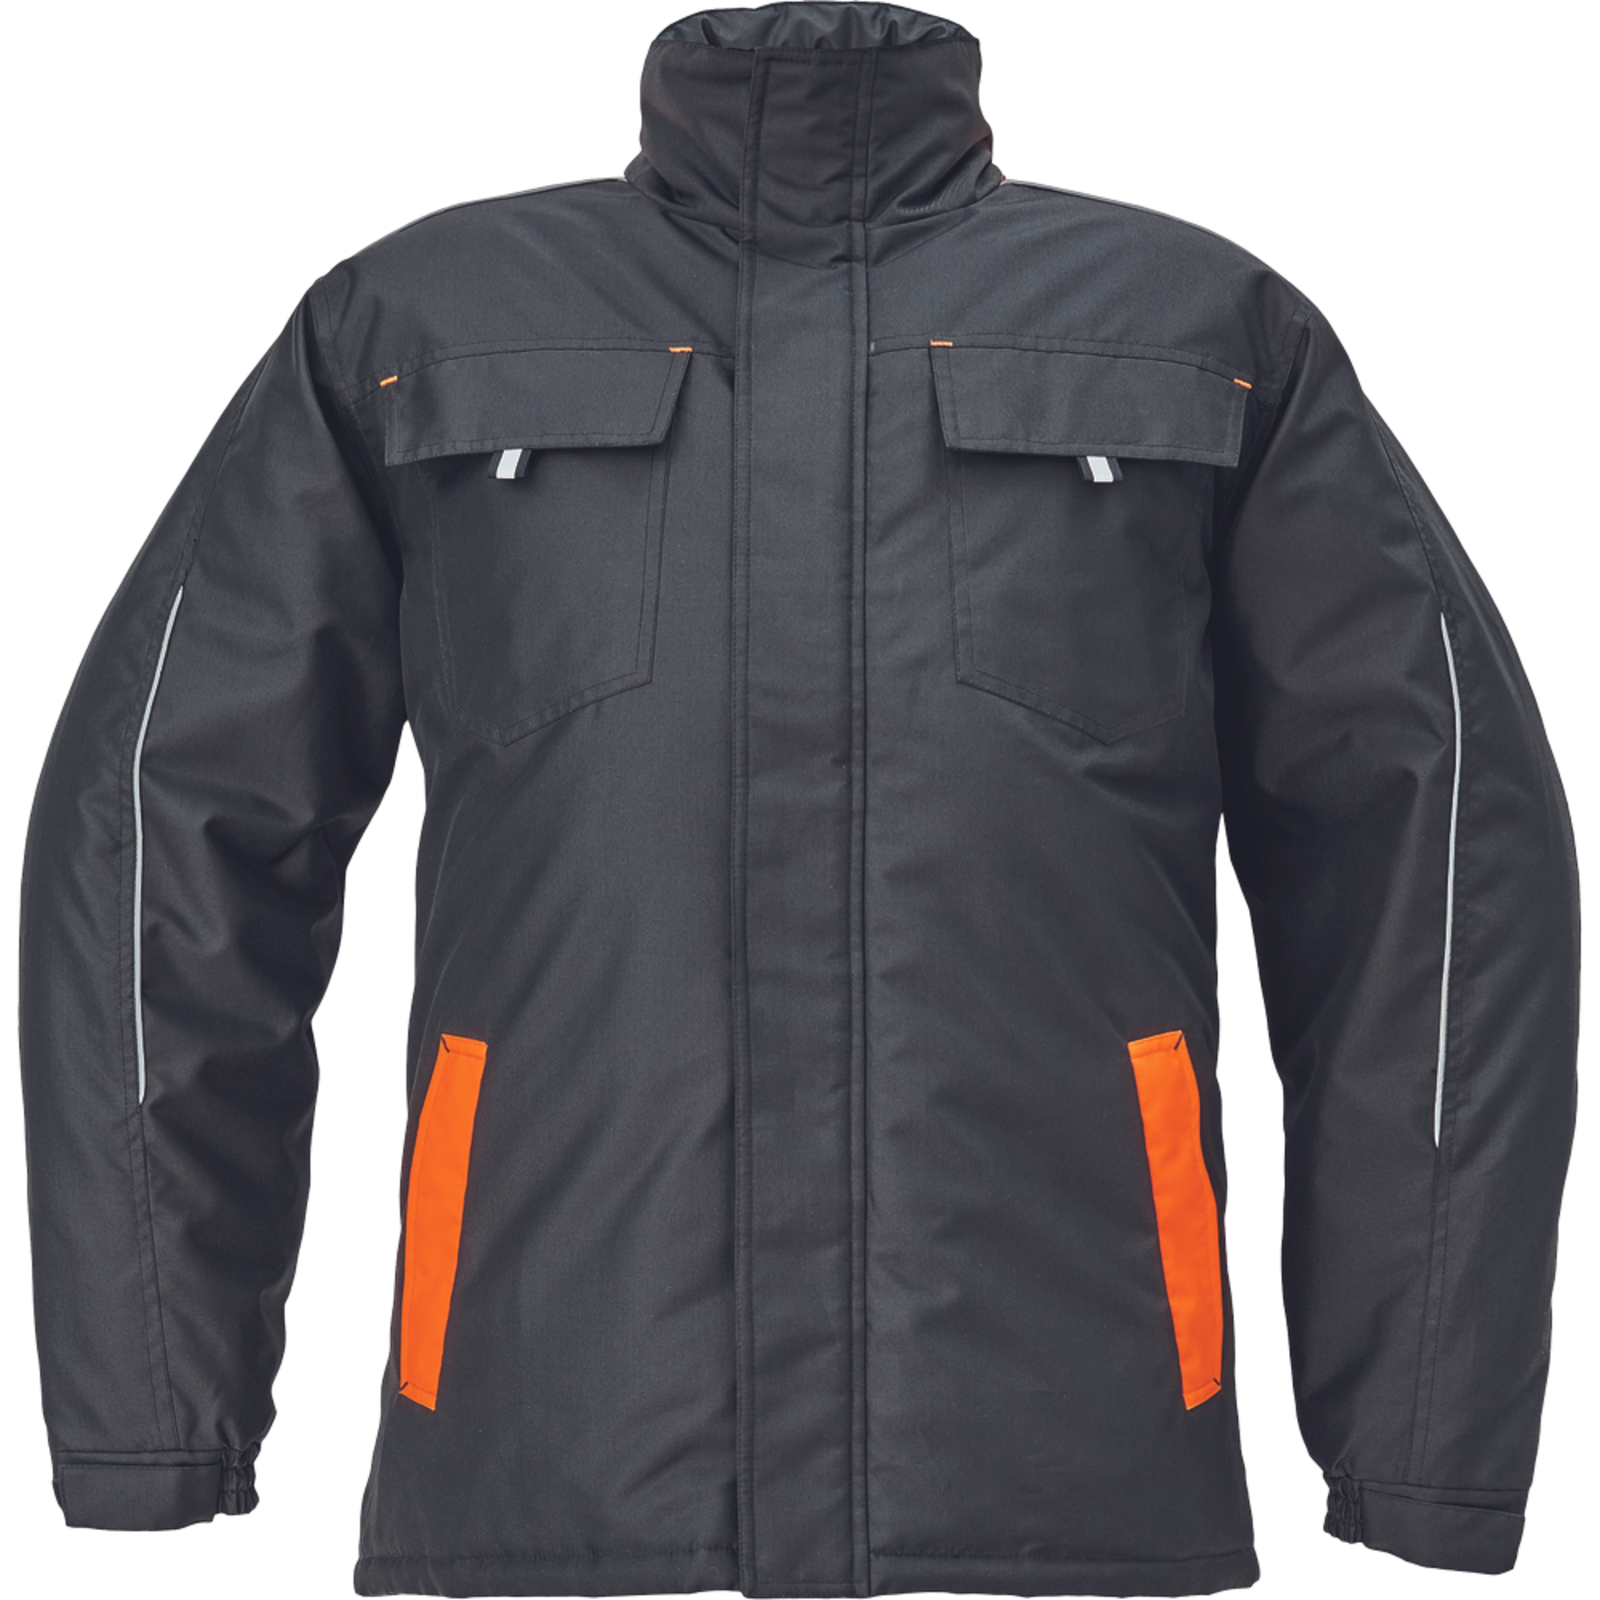 Zimná bunda Cerva Max Vivo pánska - veľkosť: M, farba: čierna/oranžová